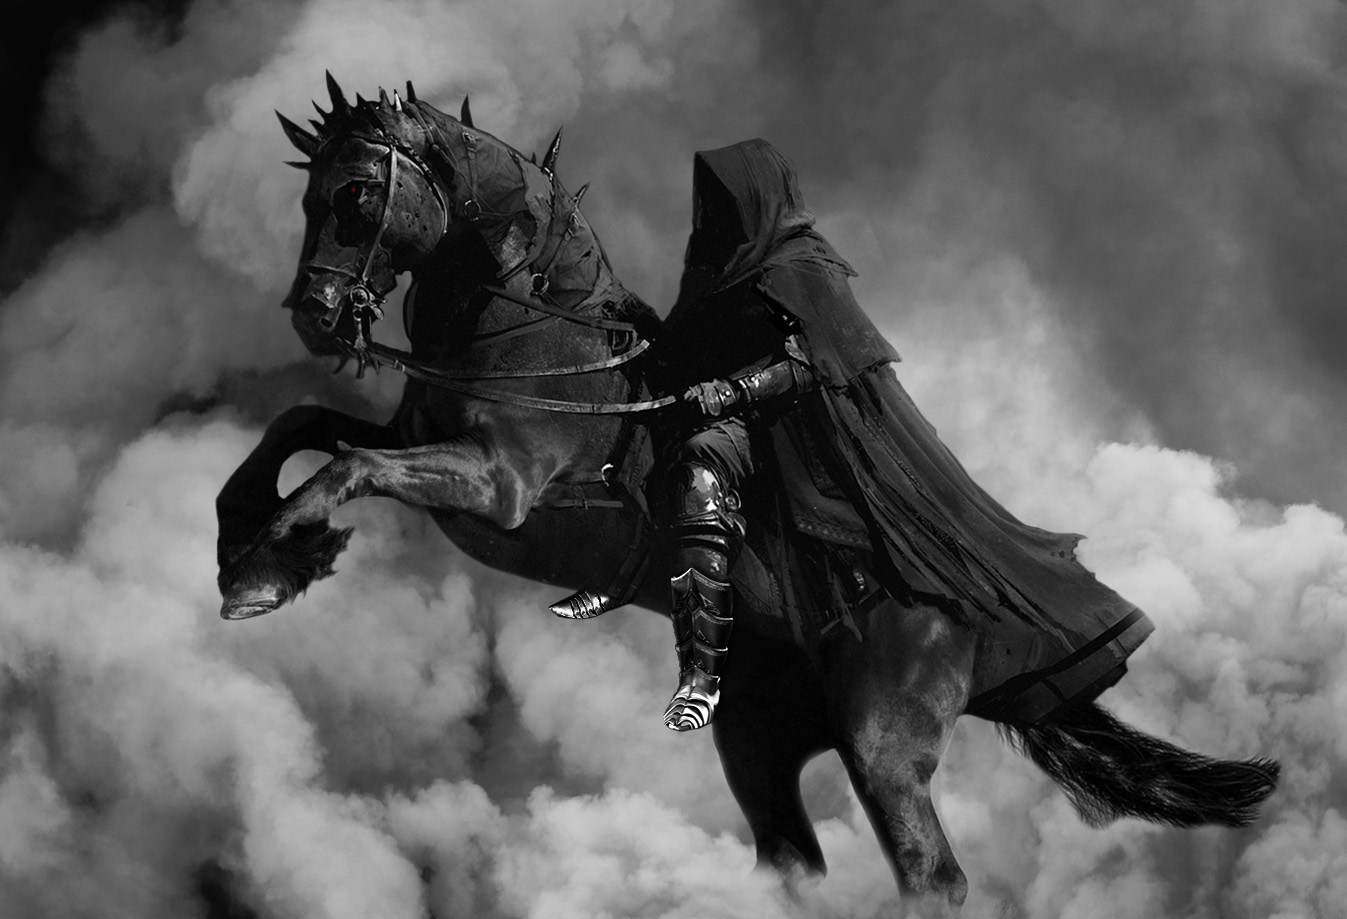 暗い馬の壁紙,うま,架空の人物,騎士,cgアートワーク,ゲーム